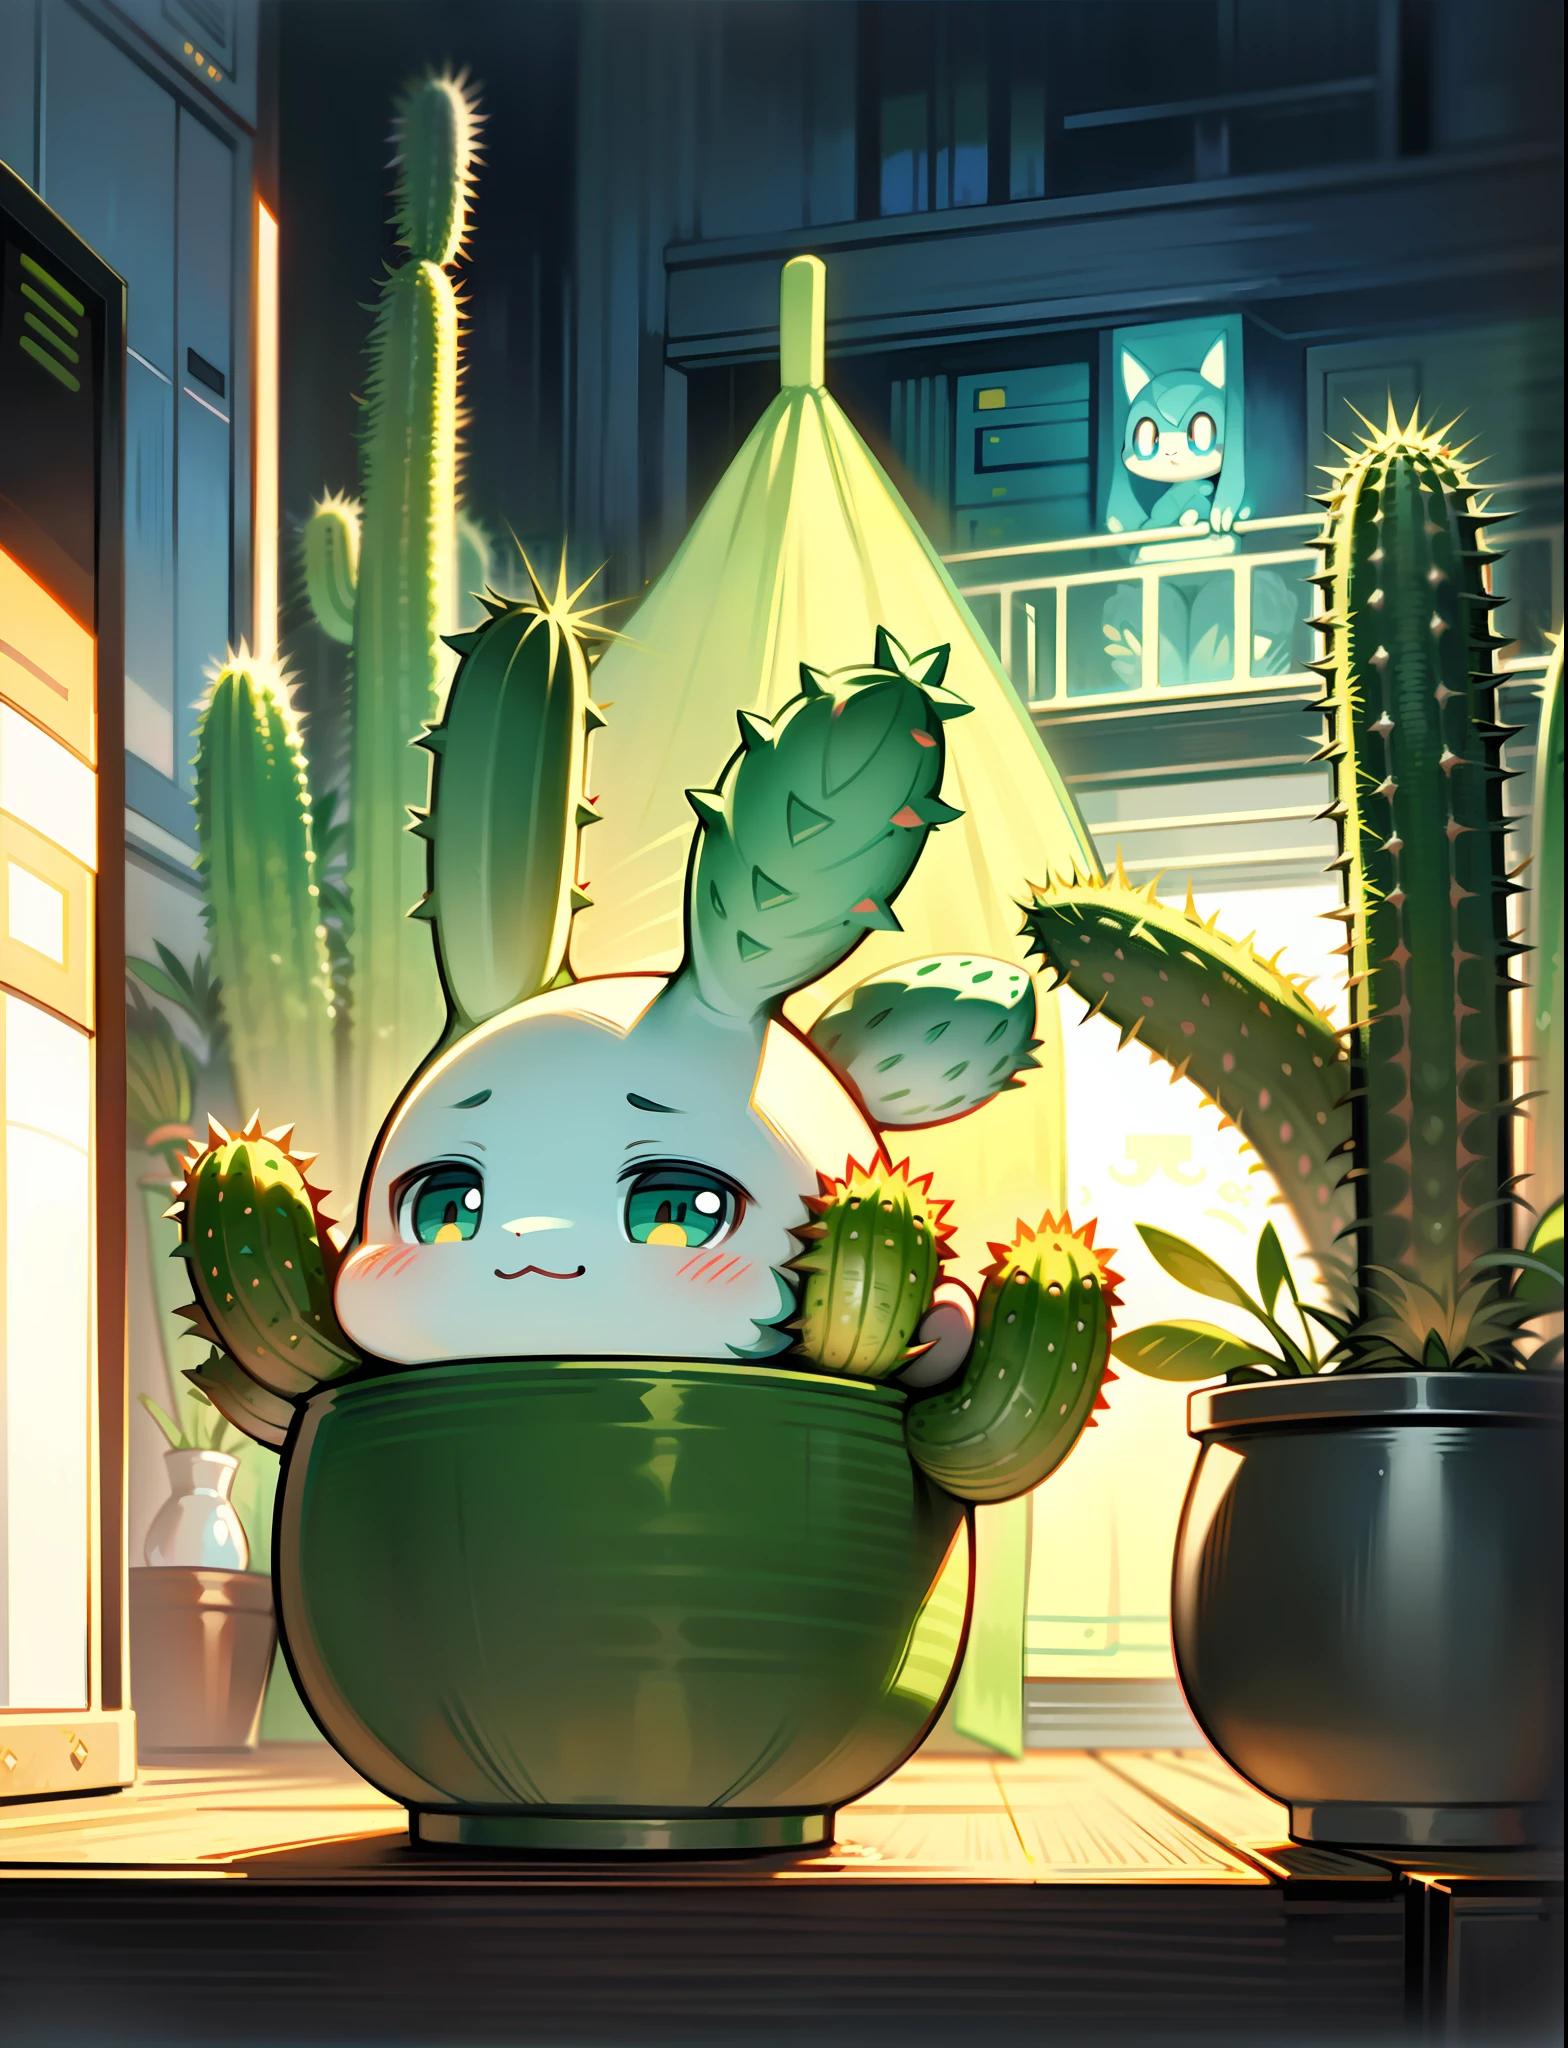 un cactus de dessin animé, cactus anthropomorphe, mignon caricatural, belle illustration, art numérique détaillé, art mignon, style Pokémon mignon, Adorable, tenant un cactus